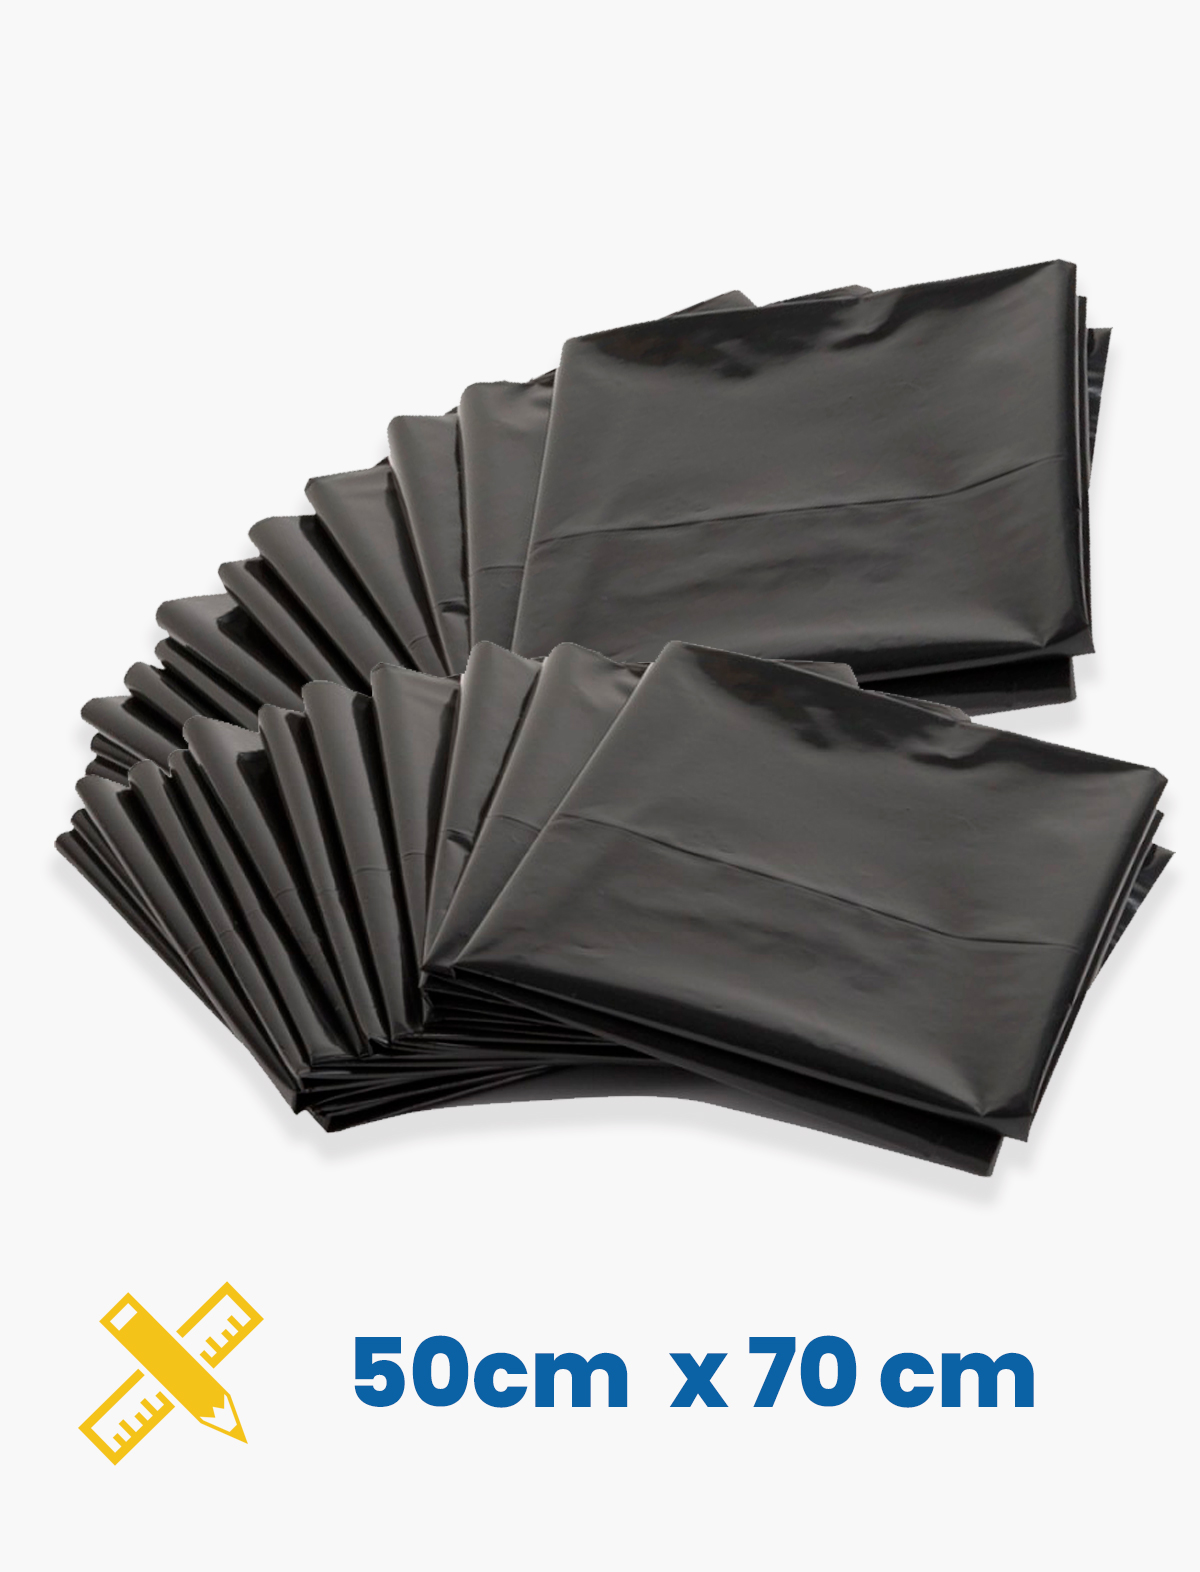 Bolsas de Plástico de diferentes tamaños Color Negra - ¡SOMOS PROFESIONALES  EN LIMPIEZA!